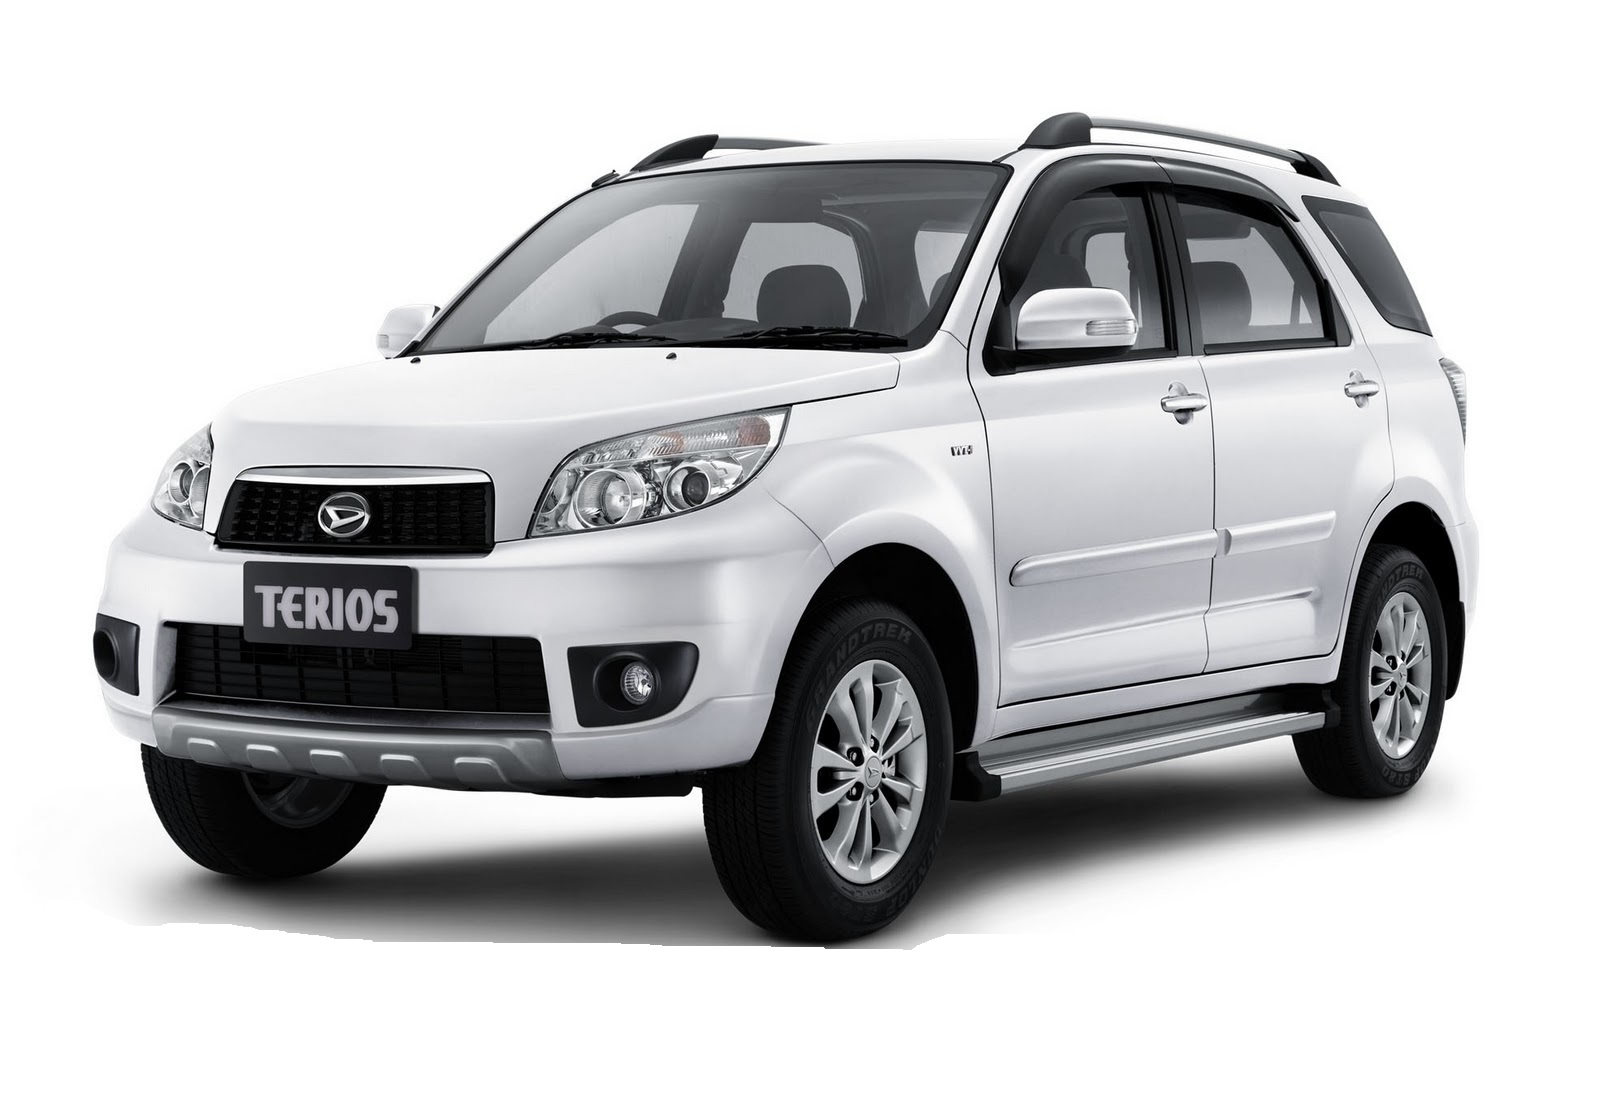 Daihatsu Terios in Pakistan, Daihatsu Terios Prices, Reviews and ...